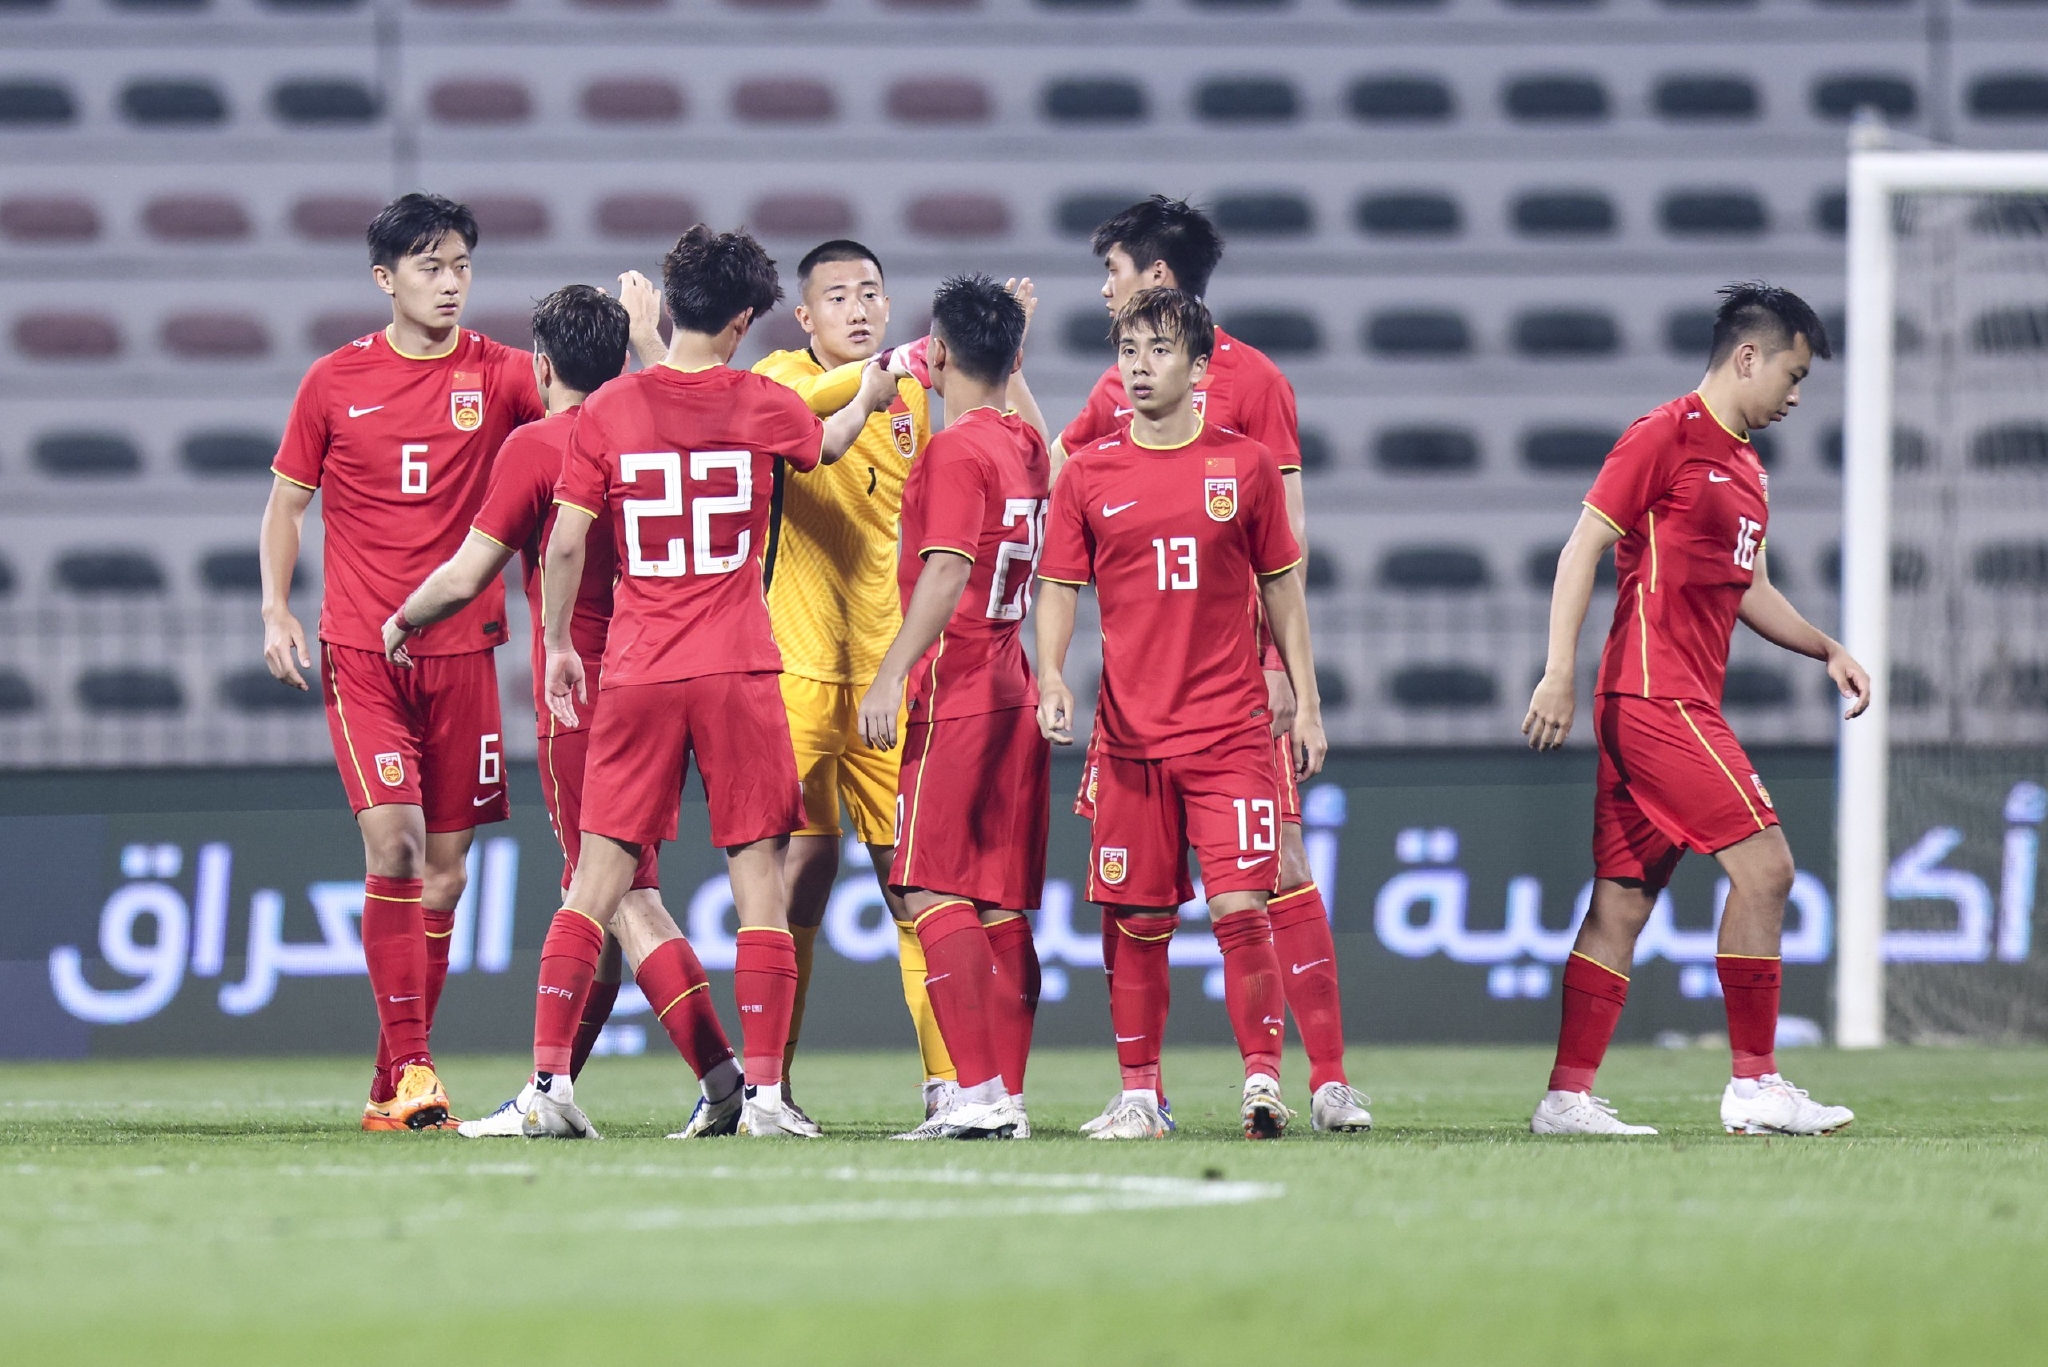 Highlights | U23 UAE vs U23 NHẬT BẢN | Chiến thắng kịch tính | AFC U23 ...